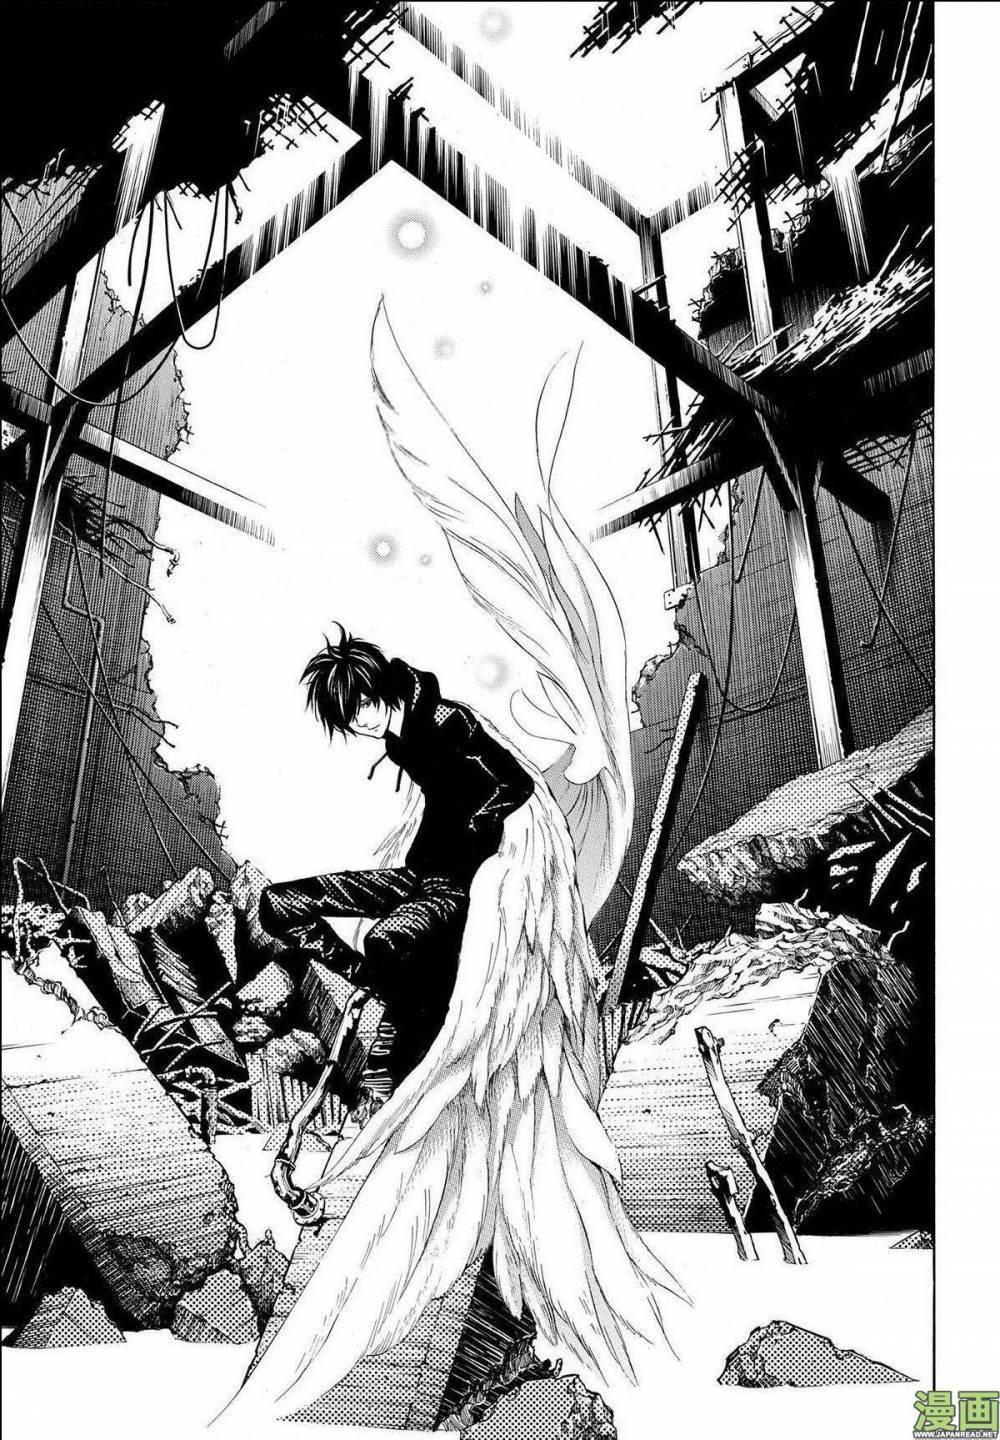 Platinum End - Exciting Japanese Manga Art Background